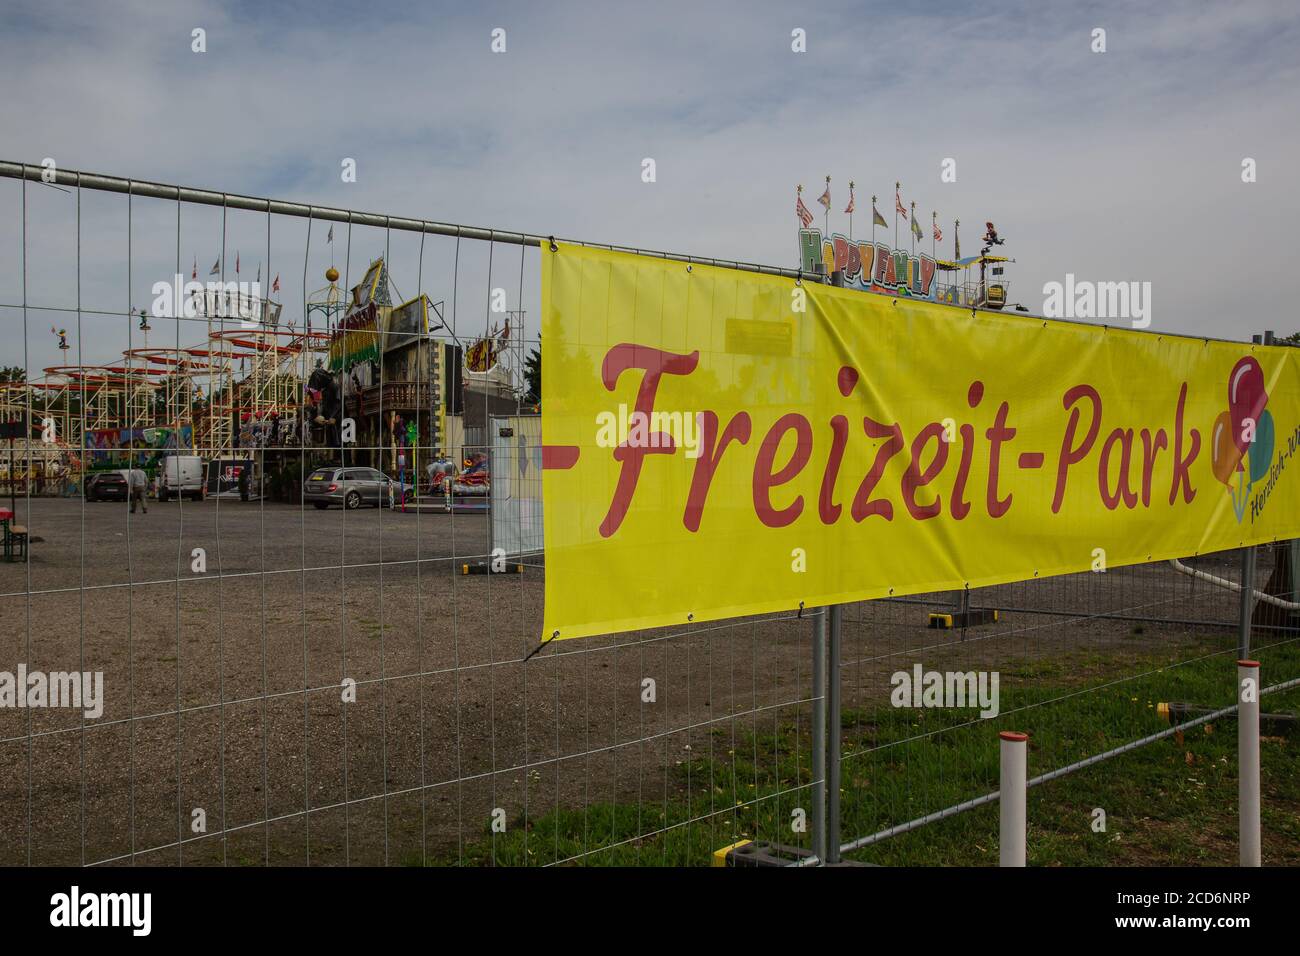 NEUWIED, ALLEMAGNE - 25 août 2020: Neuwied, Allemagne - 25 août 2020: FunPark sur un parc d'expositions derrière une clôture basée sur les restrictions de la corona pandémique Banque D'Images